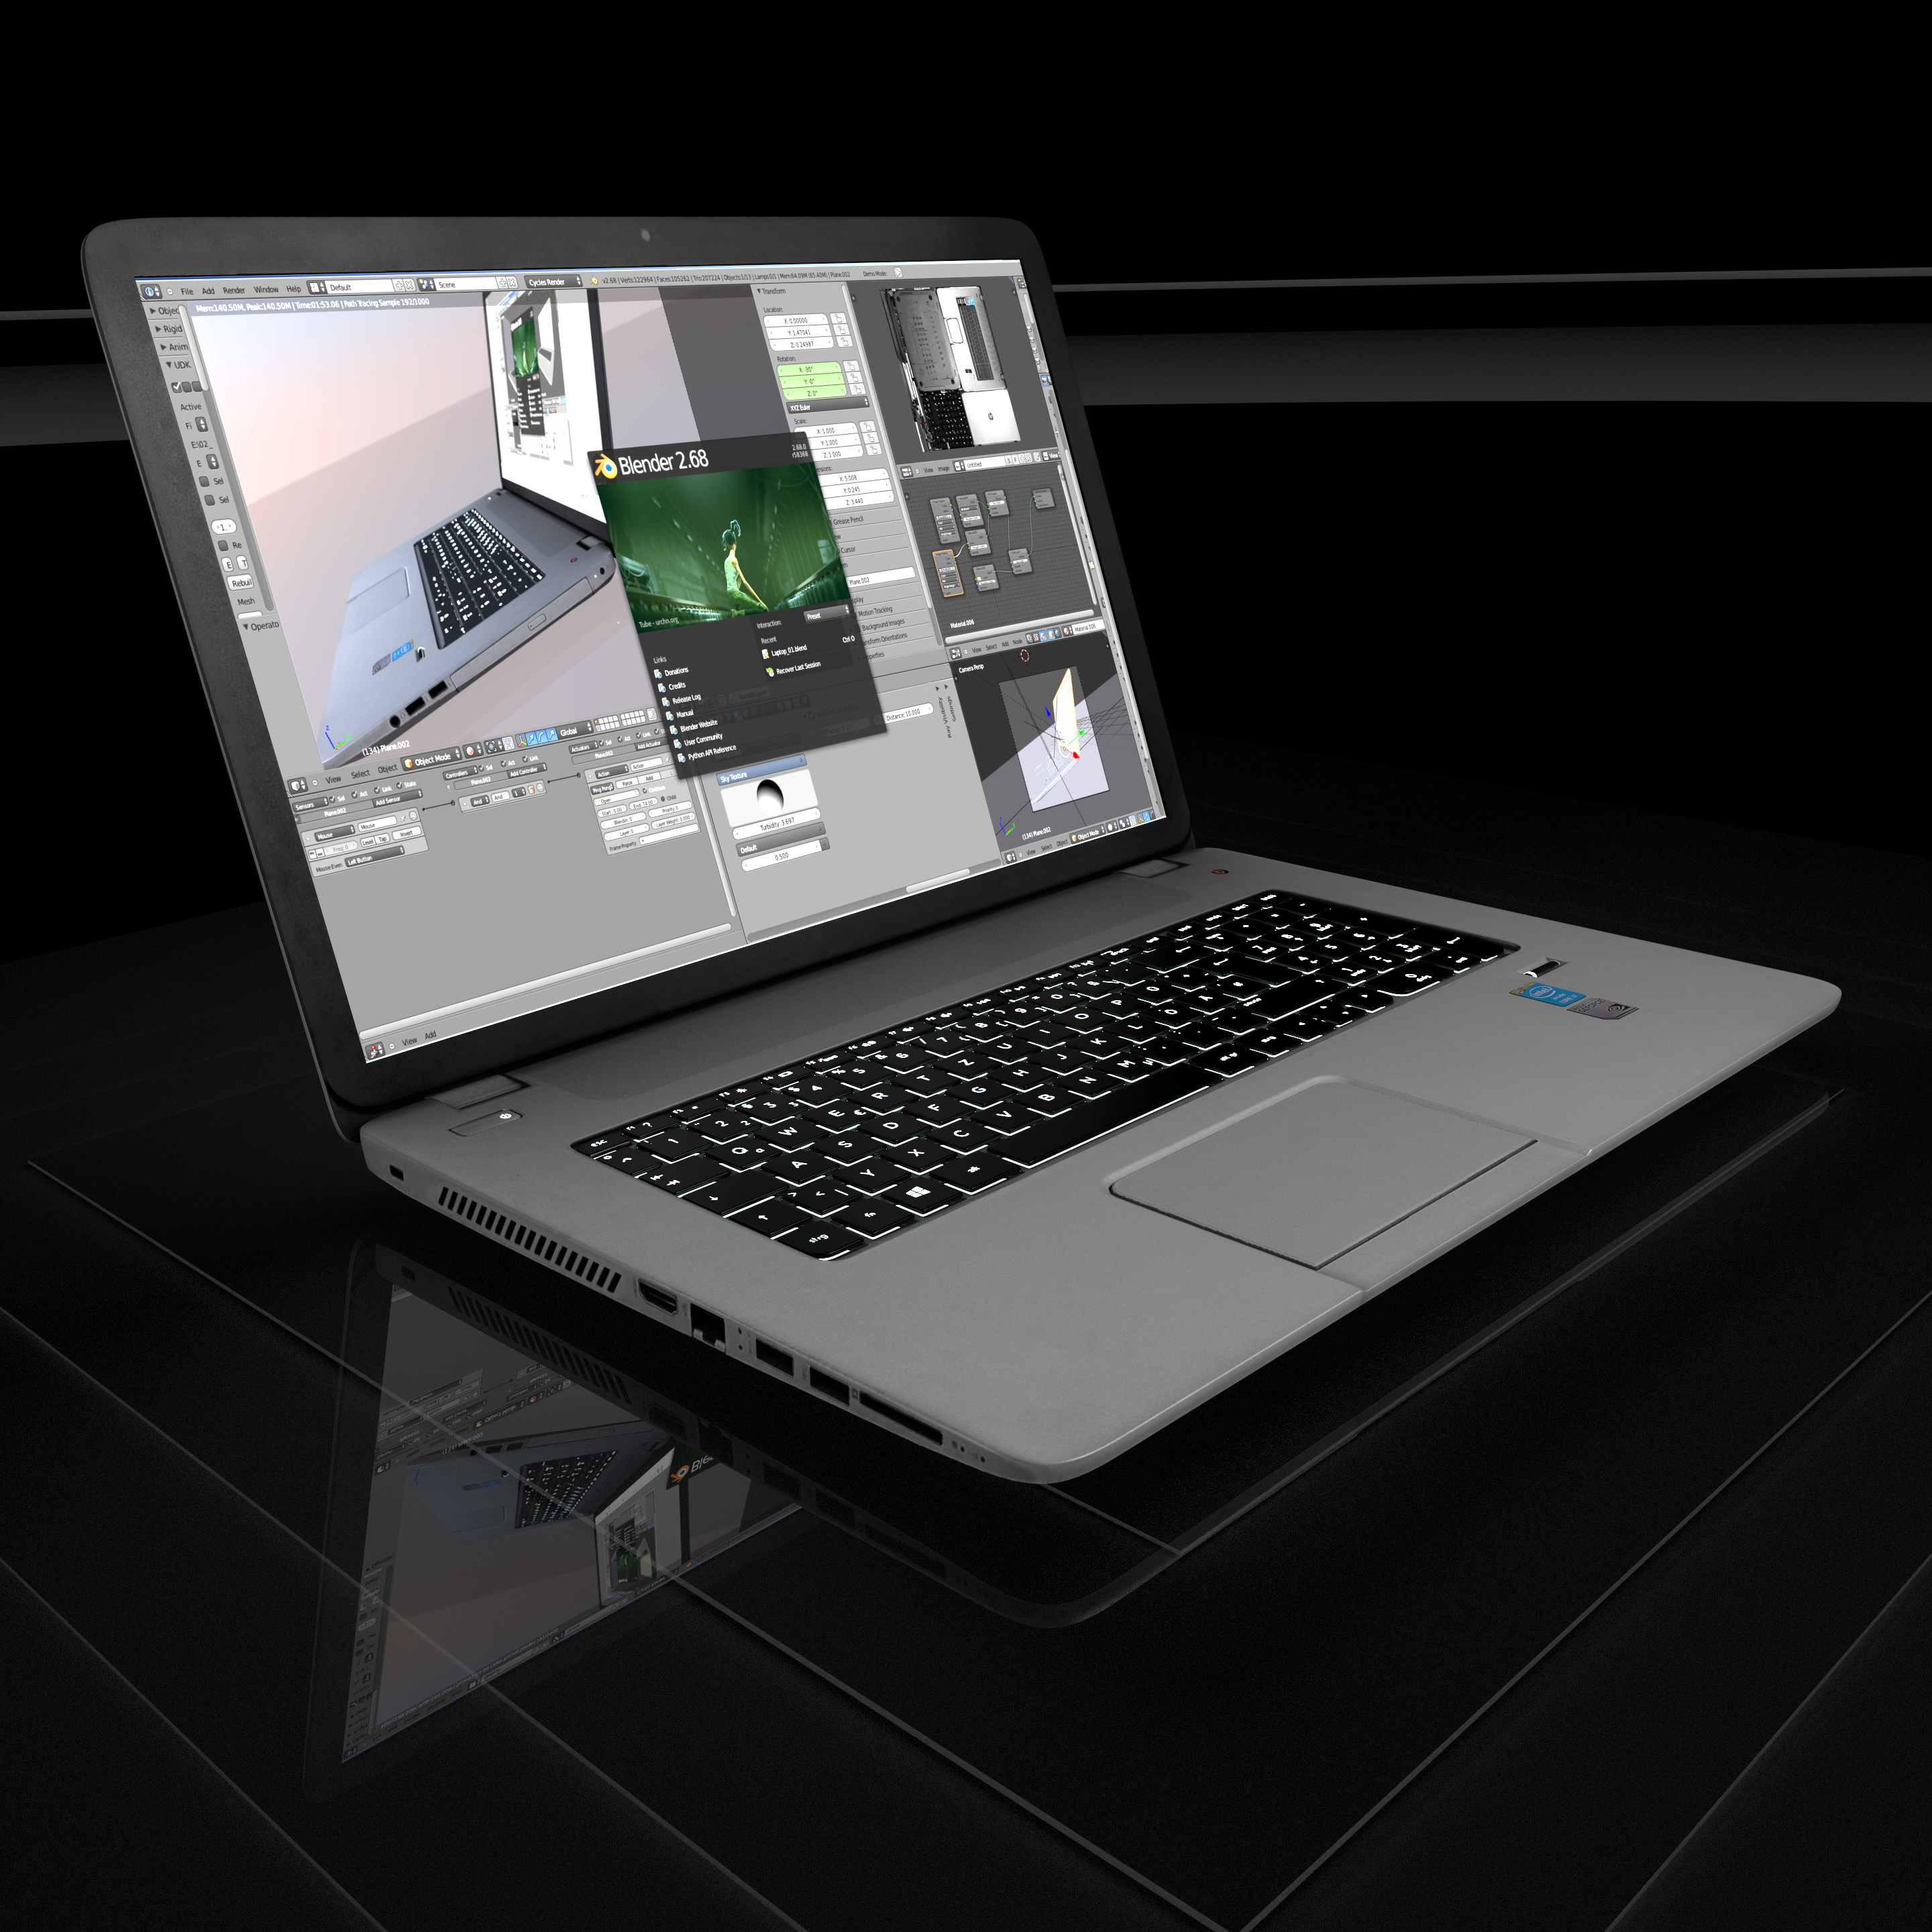 New_Laptop by Dennis Haupt Download on Blendswap Blender 268a 1